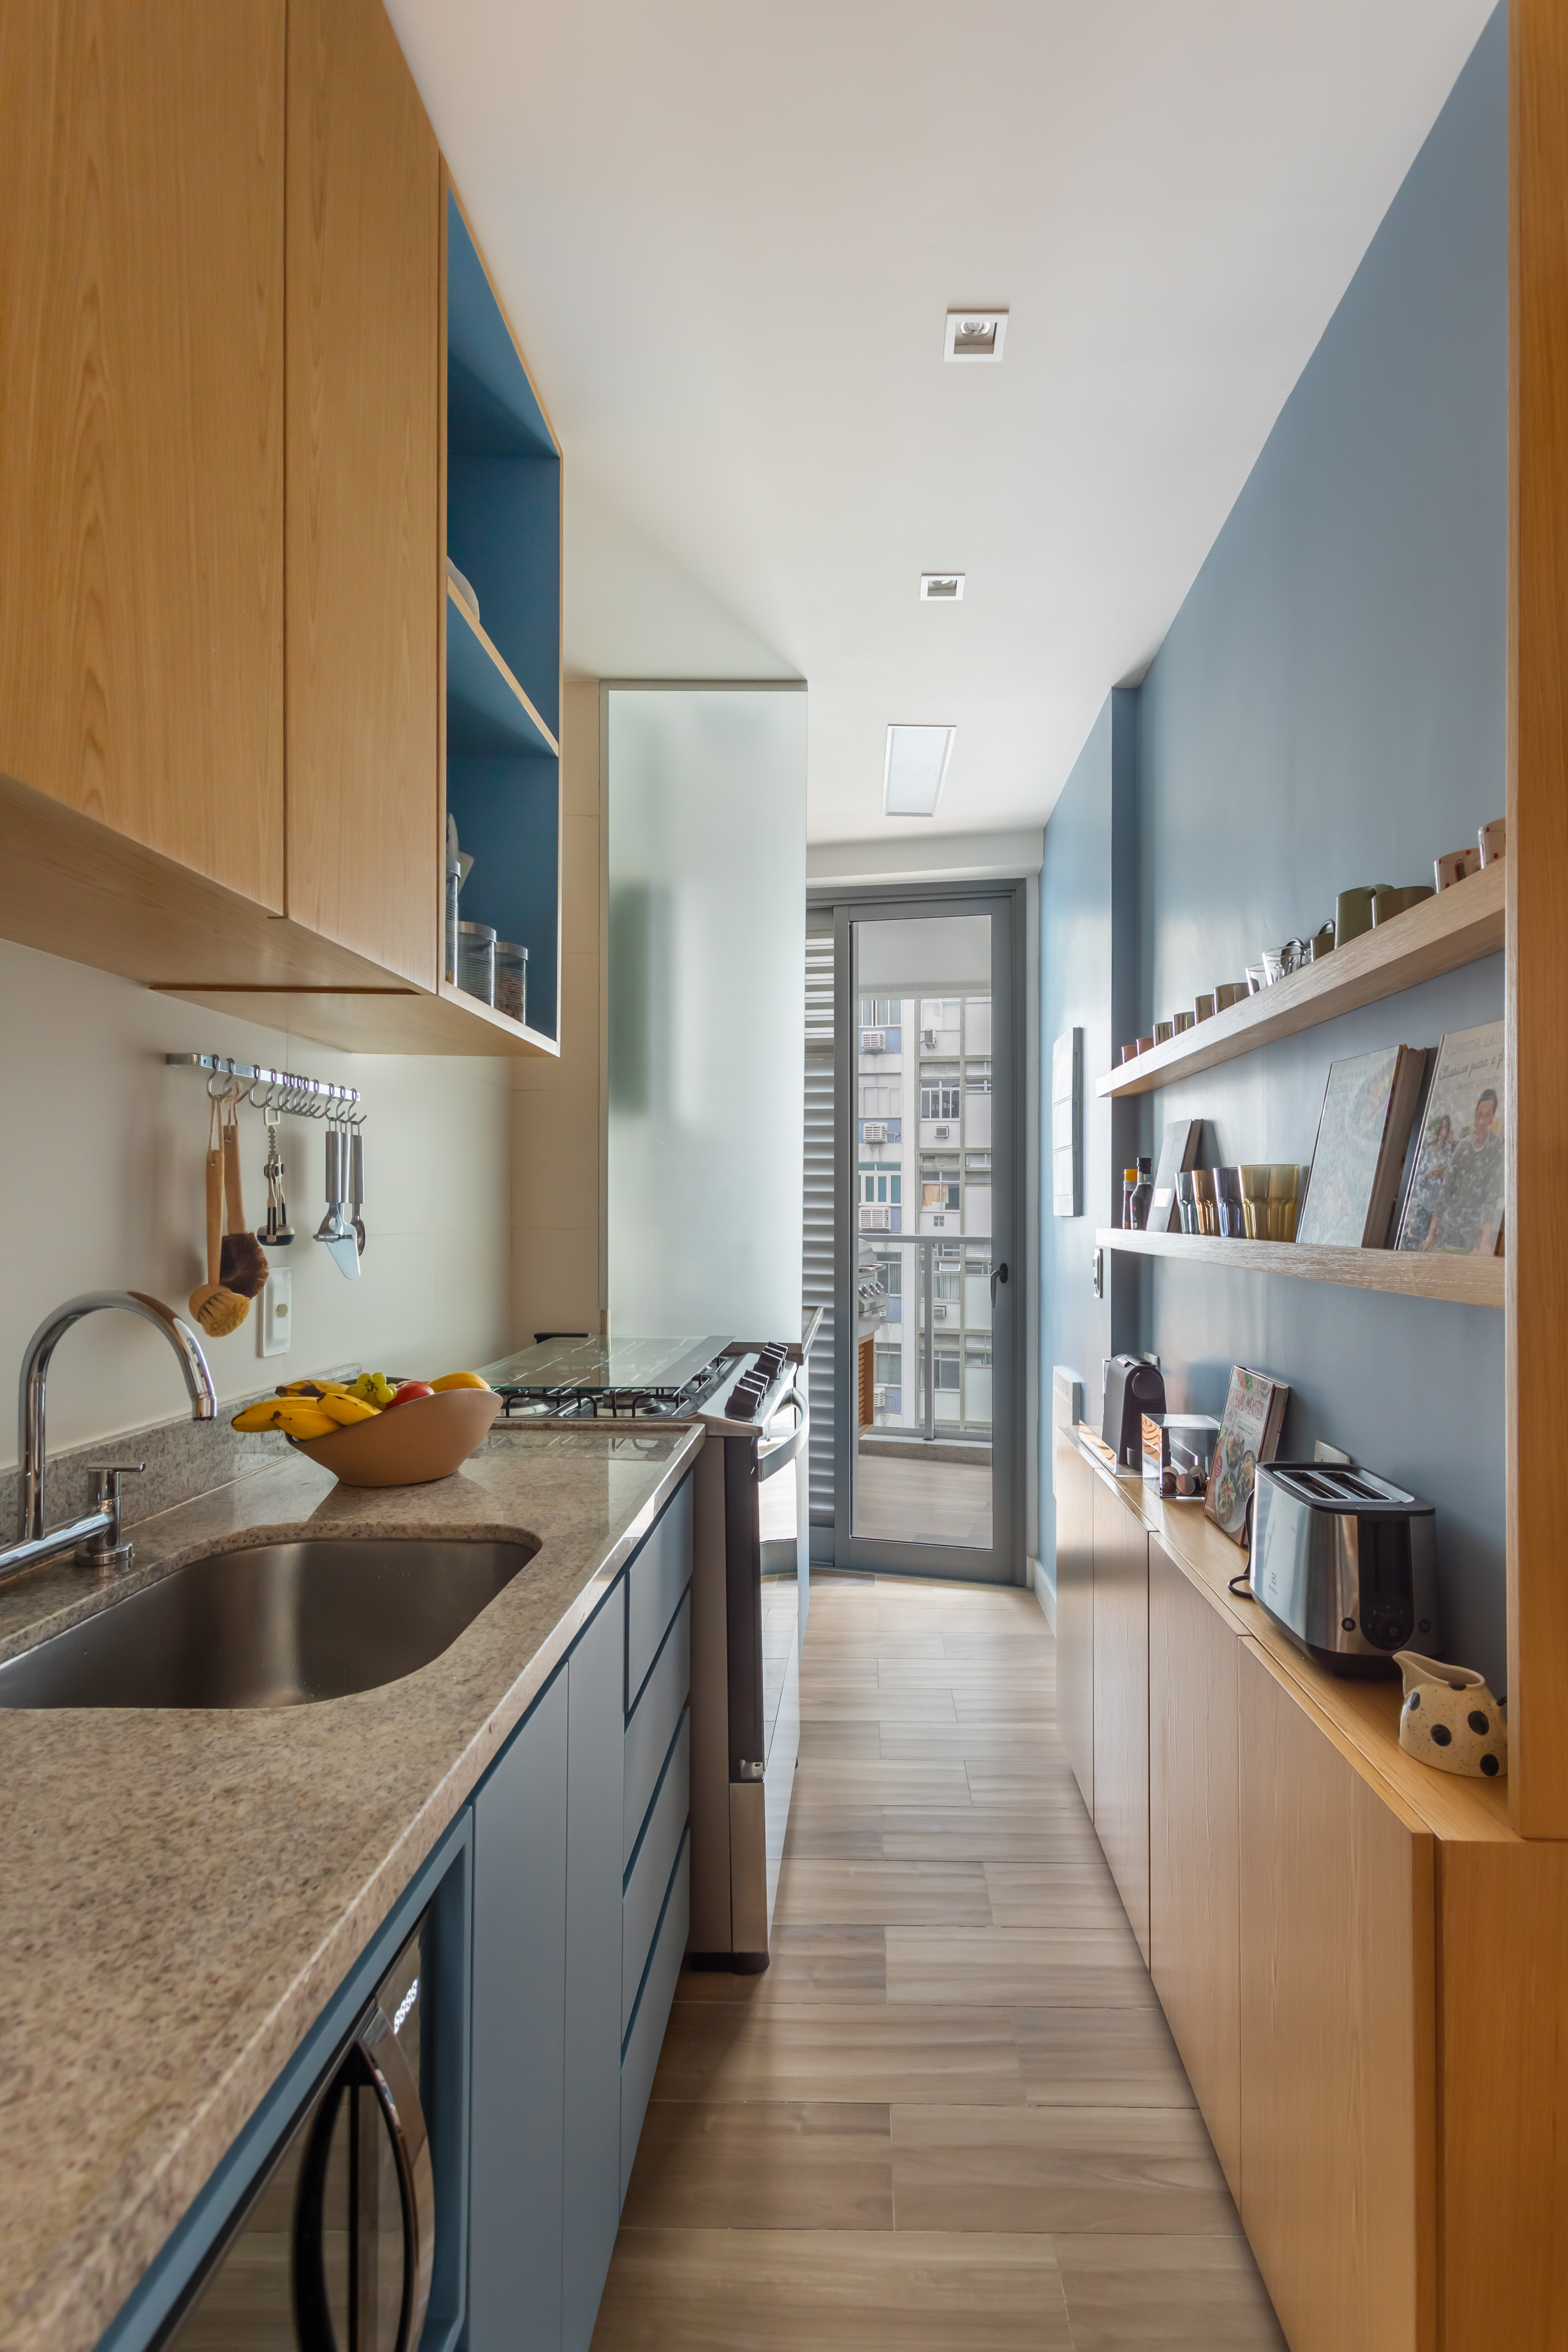 Cozinha estreita com marcenaria azul.